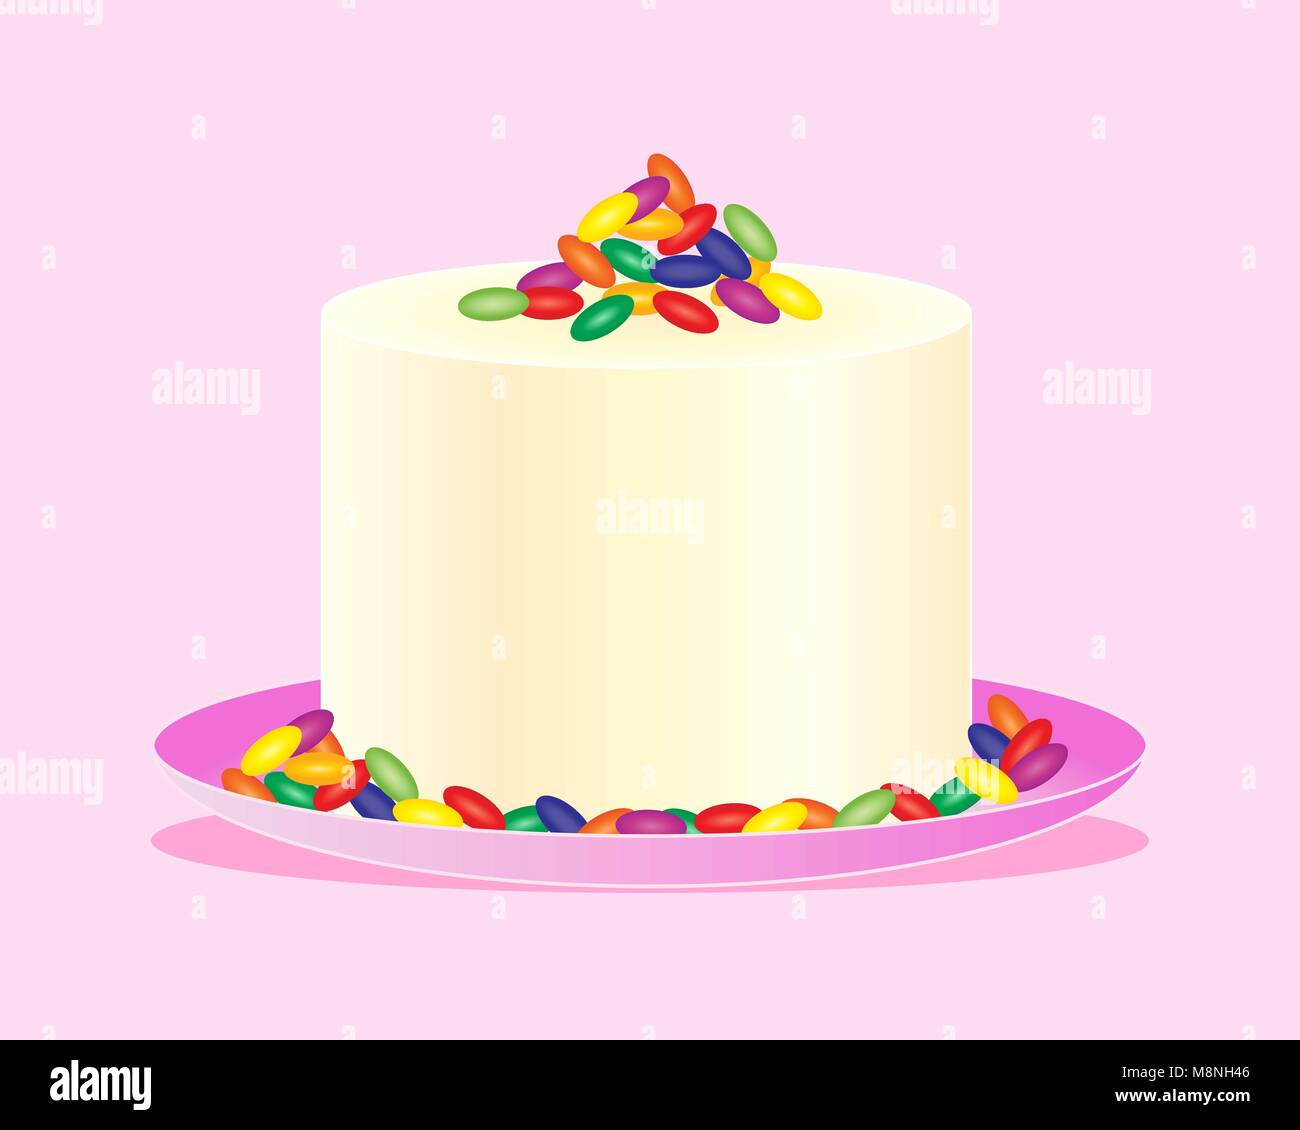 Un vecteur illustration en eps 10 format d'un gâteau de célébration avec fantaisie décoré de glaçage à la crème haricots jelly sur un fond rose clair Illustration de Vecteur